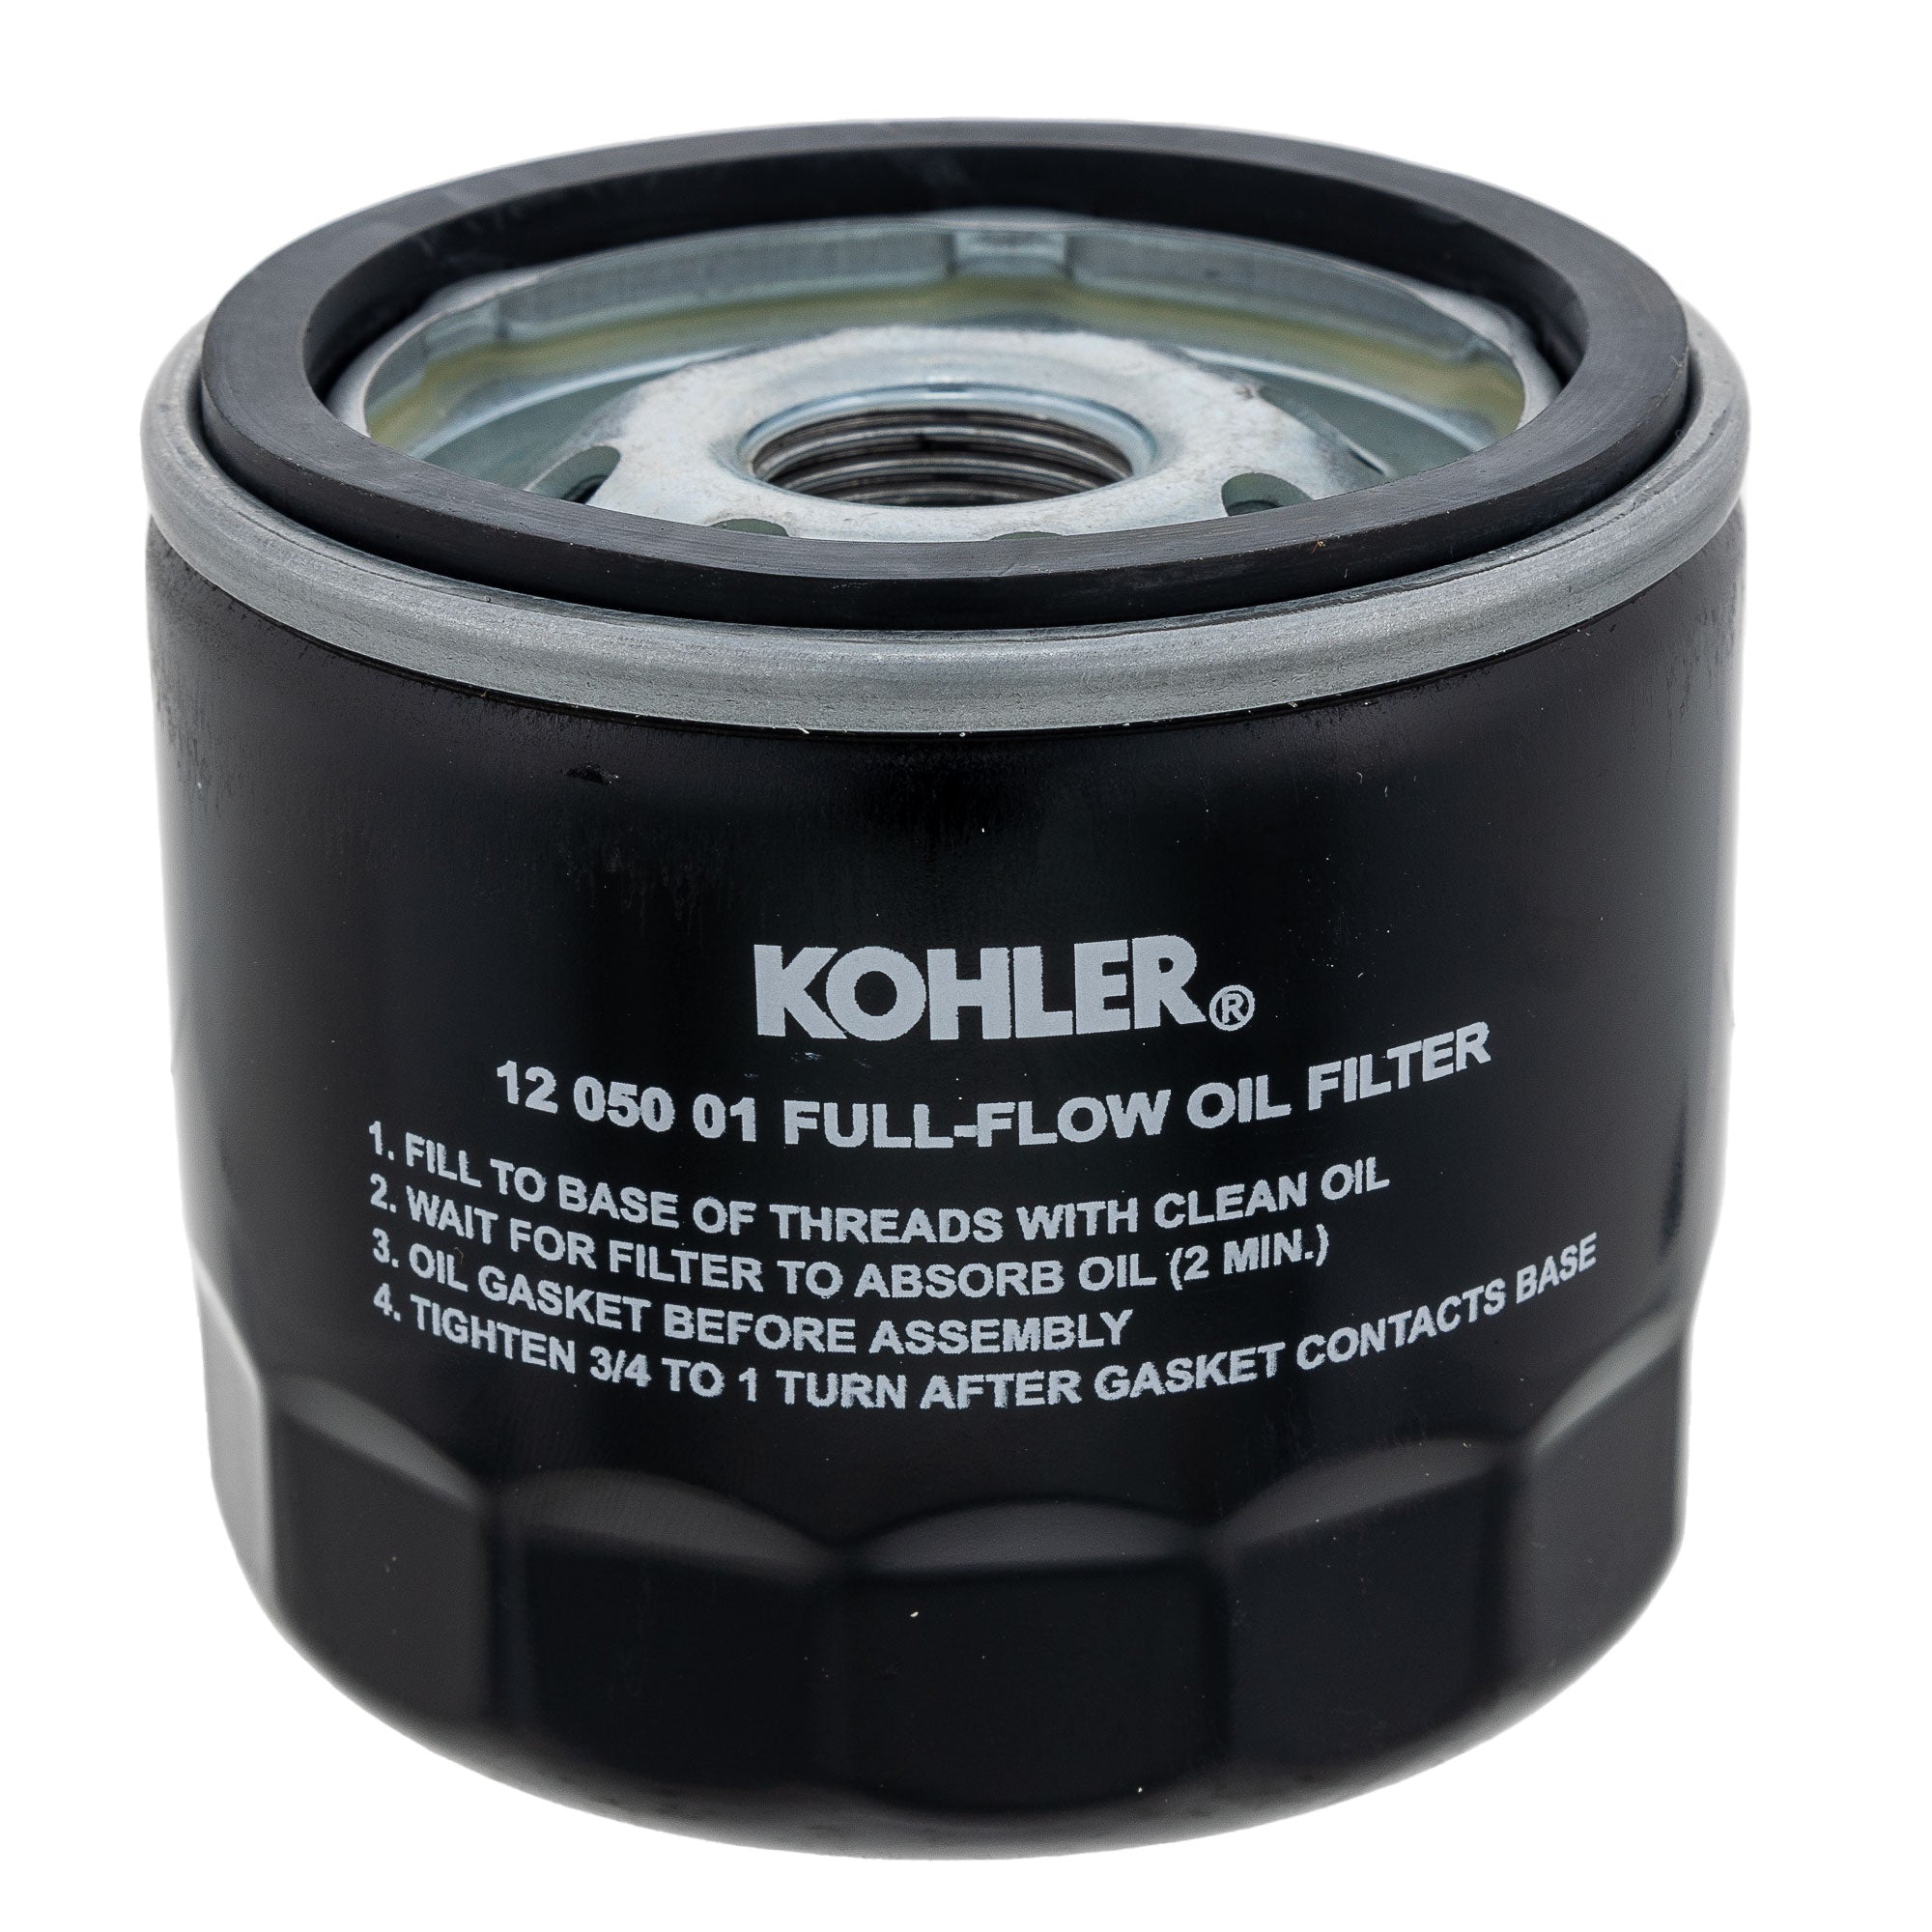 CUB CADET KH-12-050-01-S Oil Filter